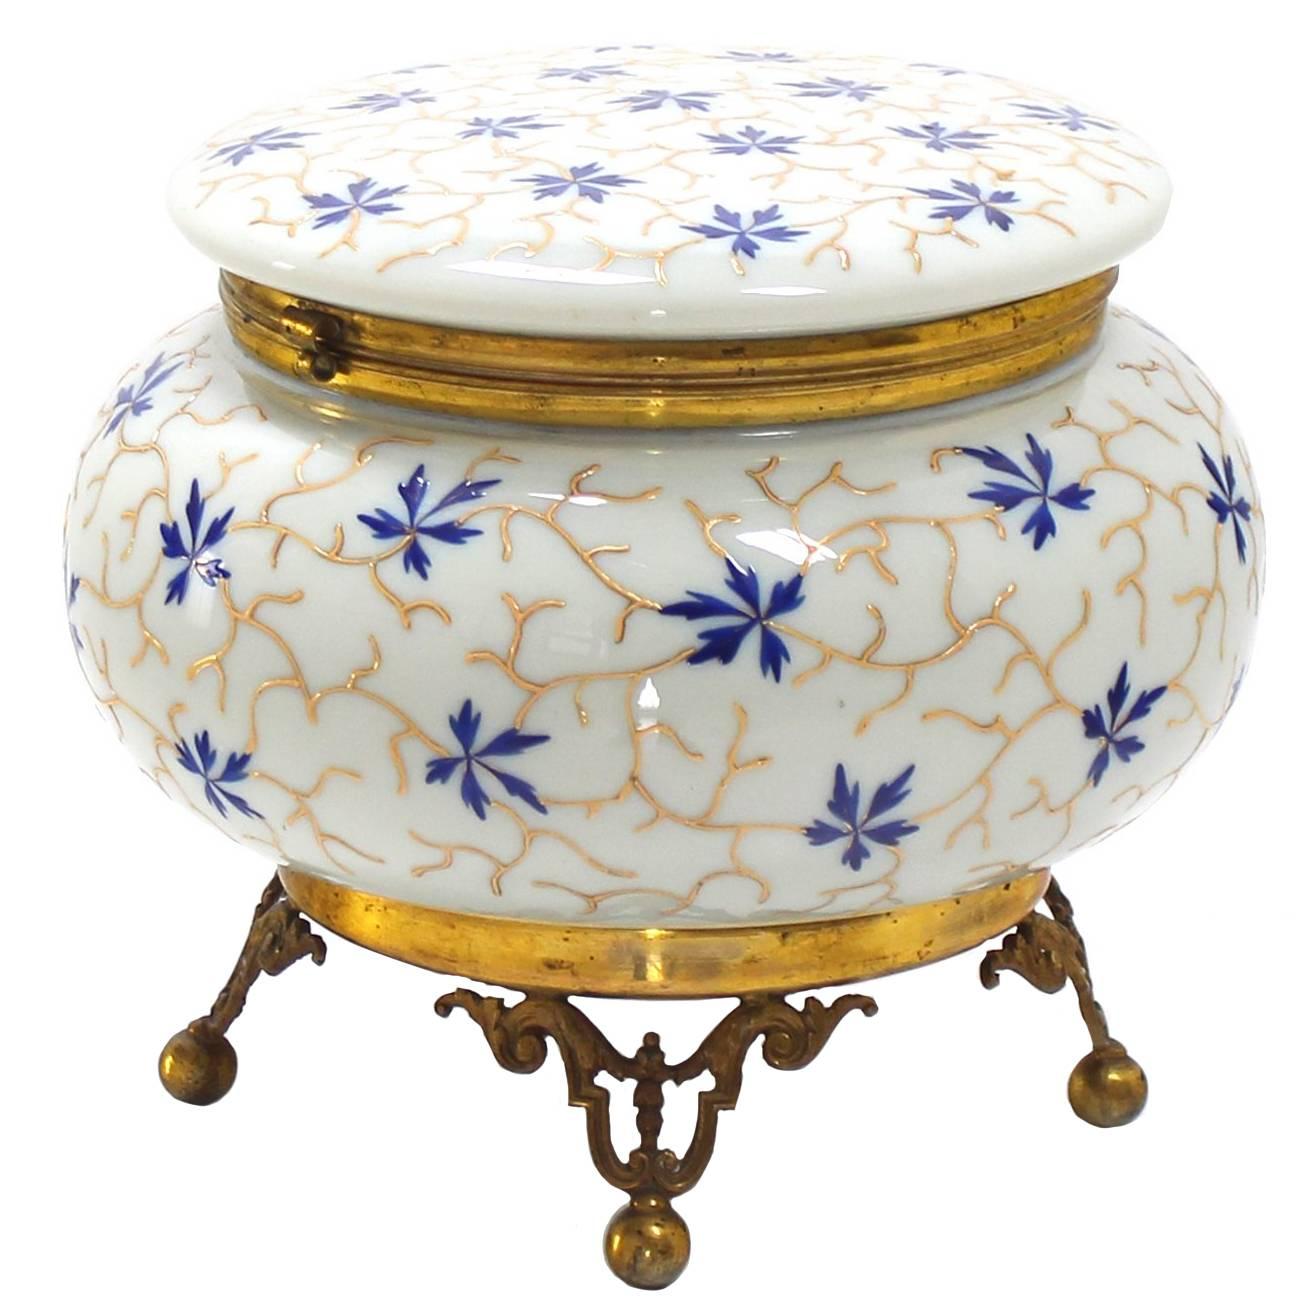 Grande boîte de commode ronde en verre d'art émaillé à motifs floraux peints